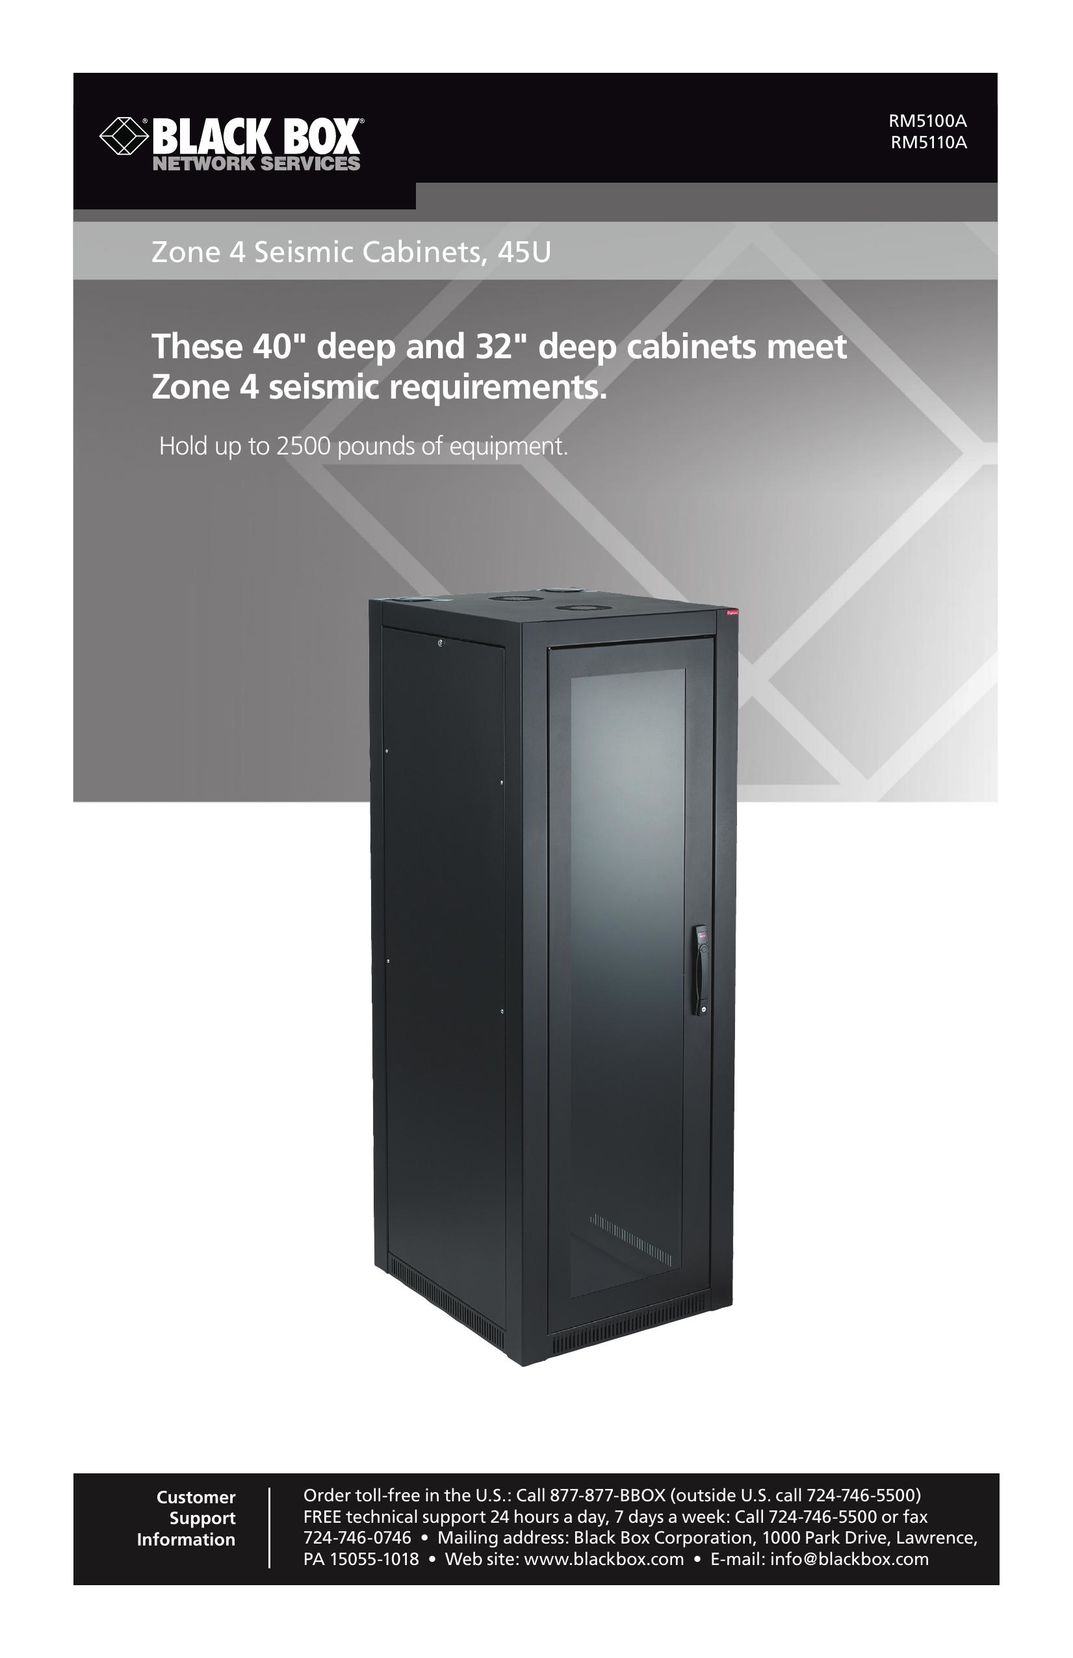 Black Box Zone 4 Seismic Cabinets, 45U Cable Box User Manual